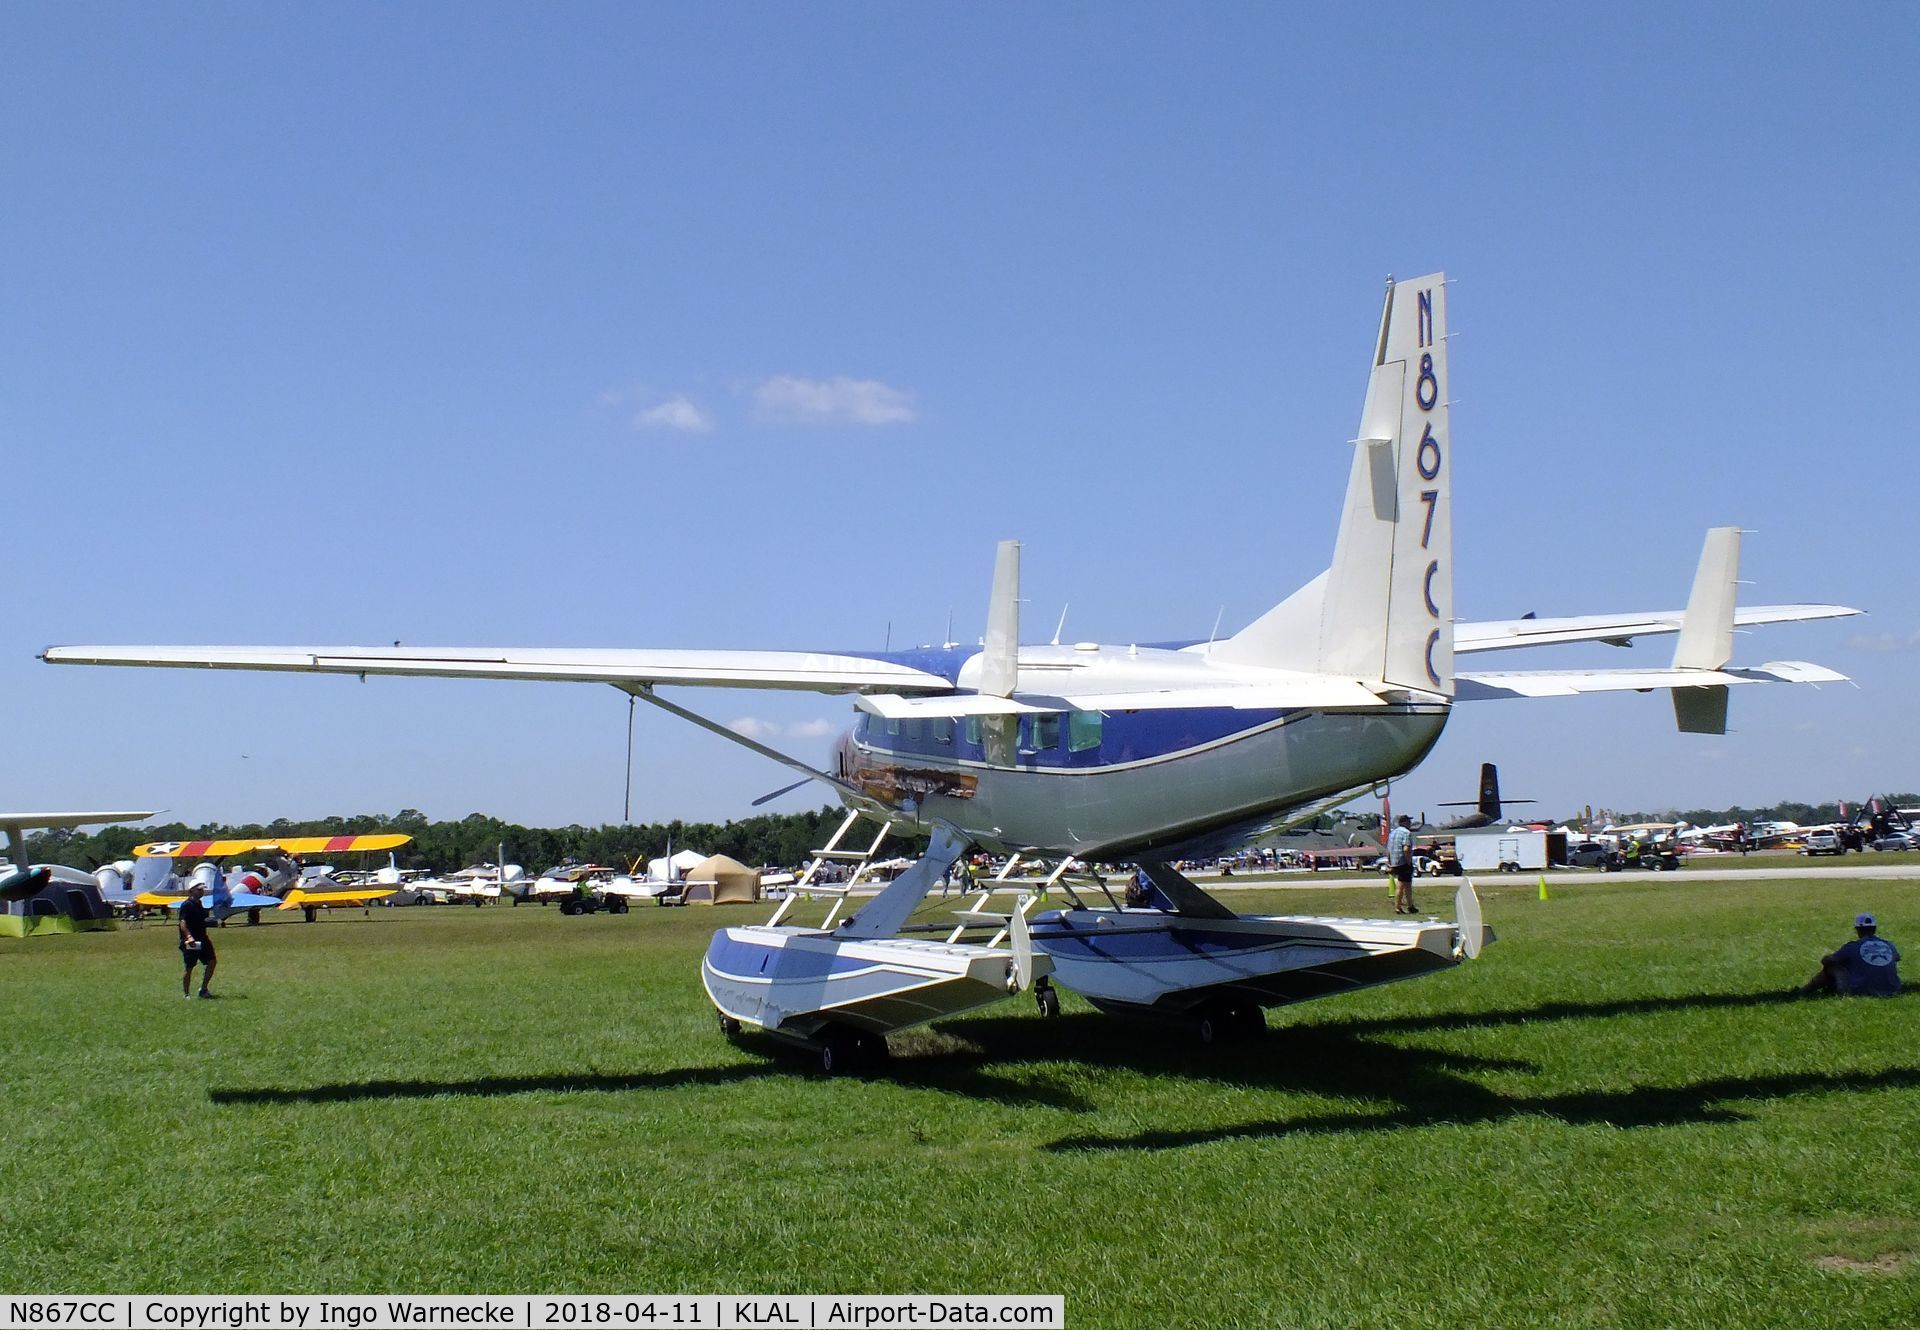 N867CC, 2014 Cessna 208B GrandCaravan EX C/N 208B5103, Cessna 208B Grand Caravan on amphibious floats at 2018 Sun 'n Fun, Lakeland FL